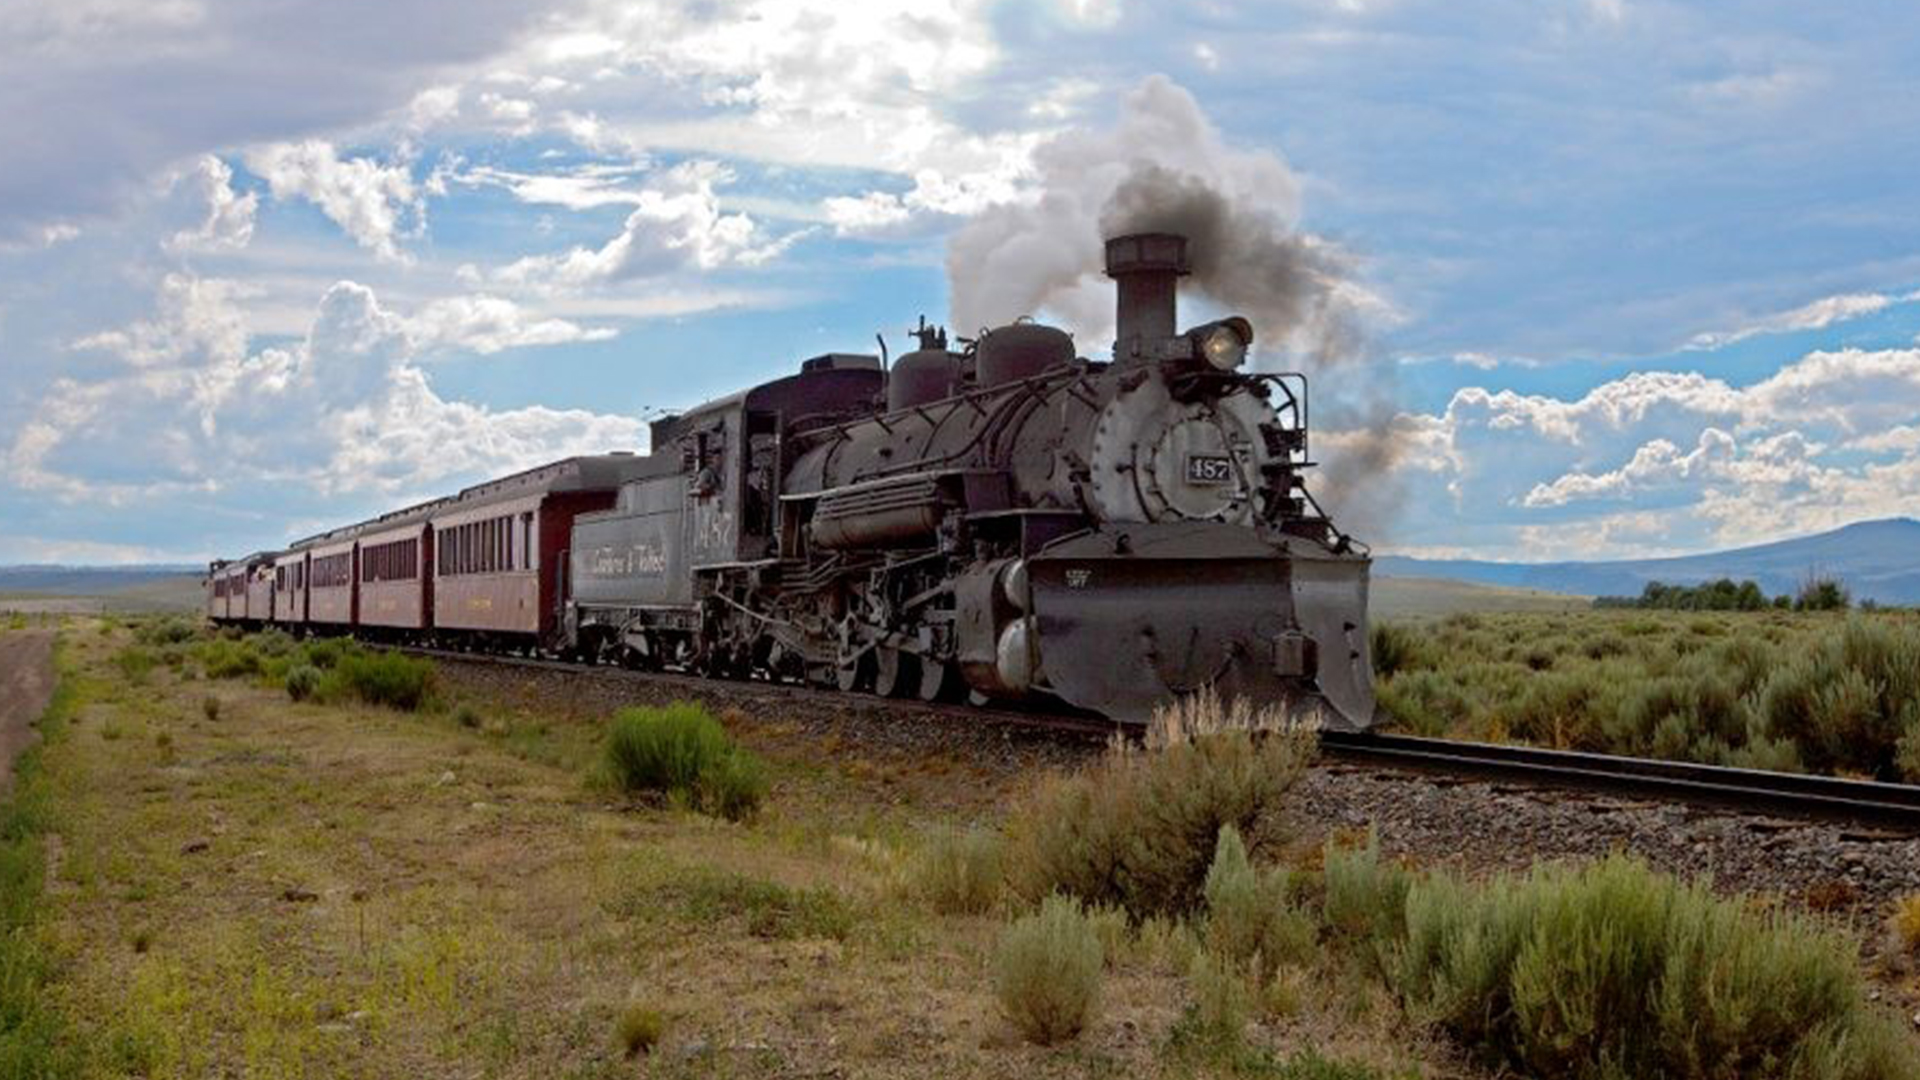 New Mexico Autumn & Rail #2